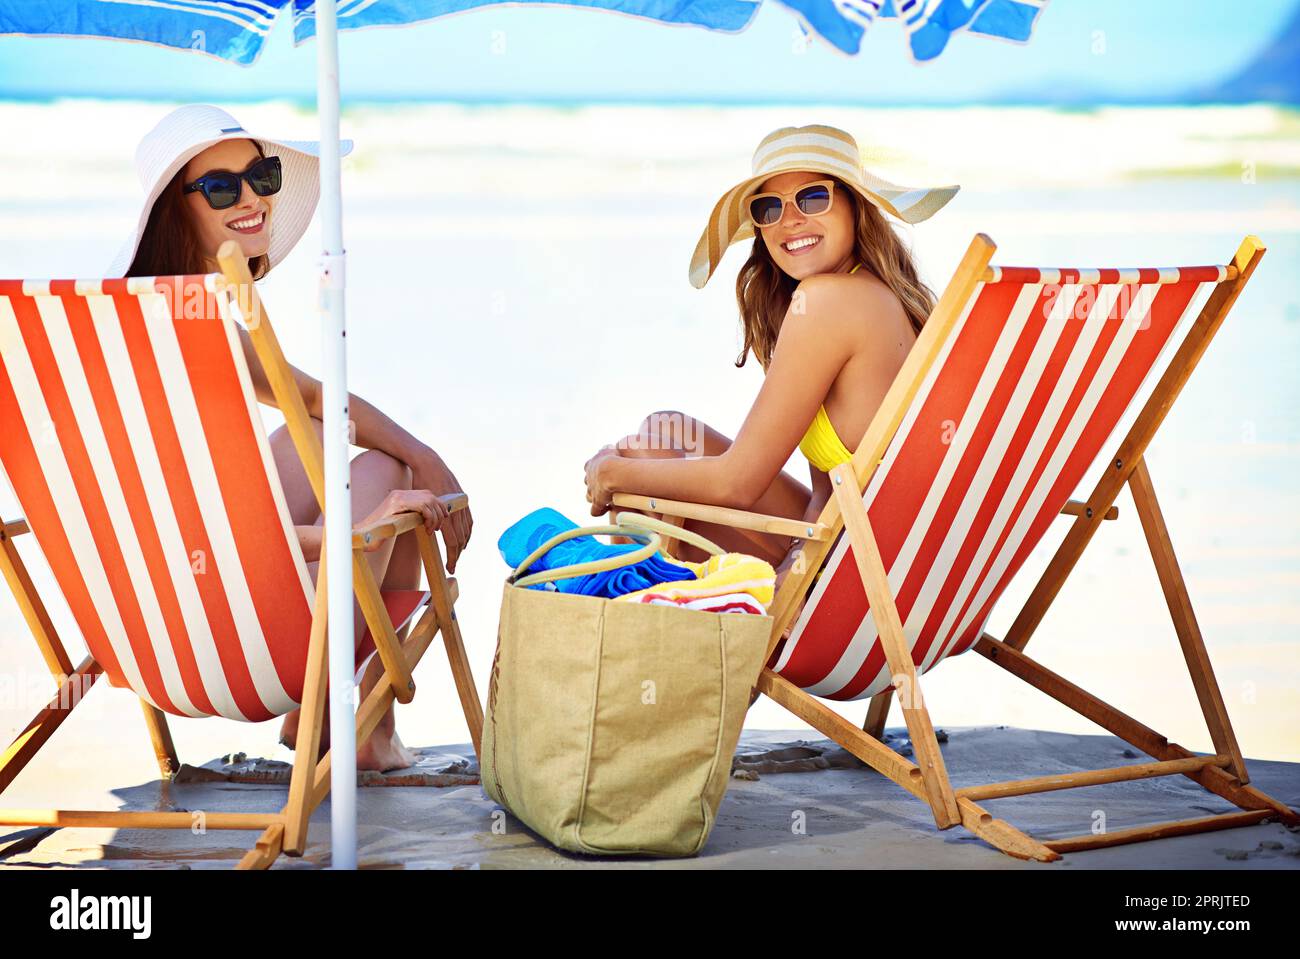 Regalarti i loro migliori sorrisi estivi. Ritratto di due belle giovani donne che mangiano un gelato in spiaggia. Foto Stock